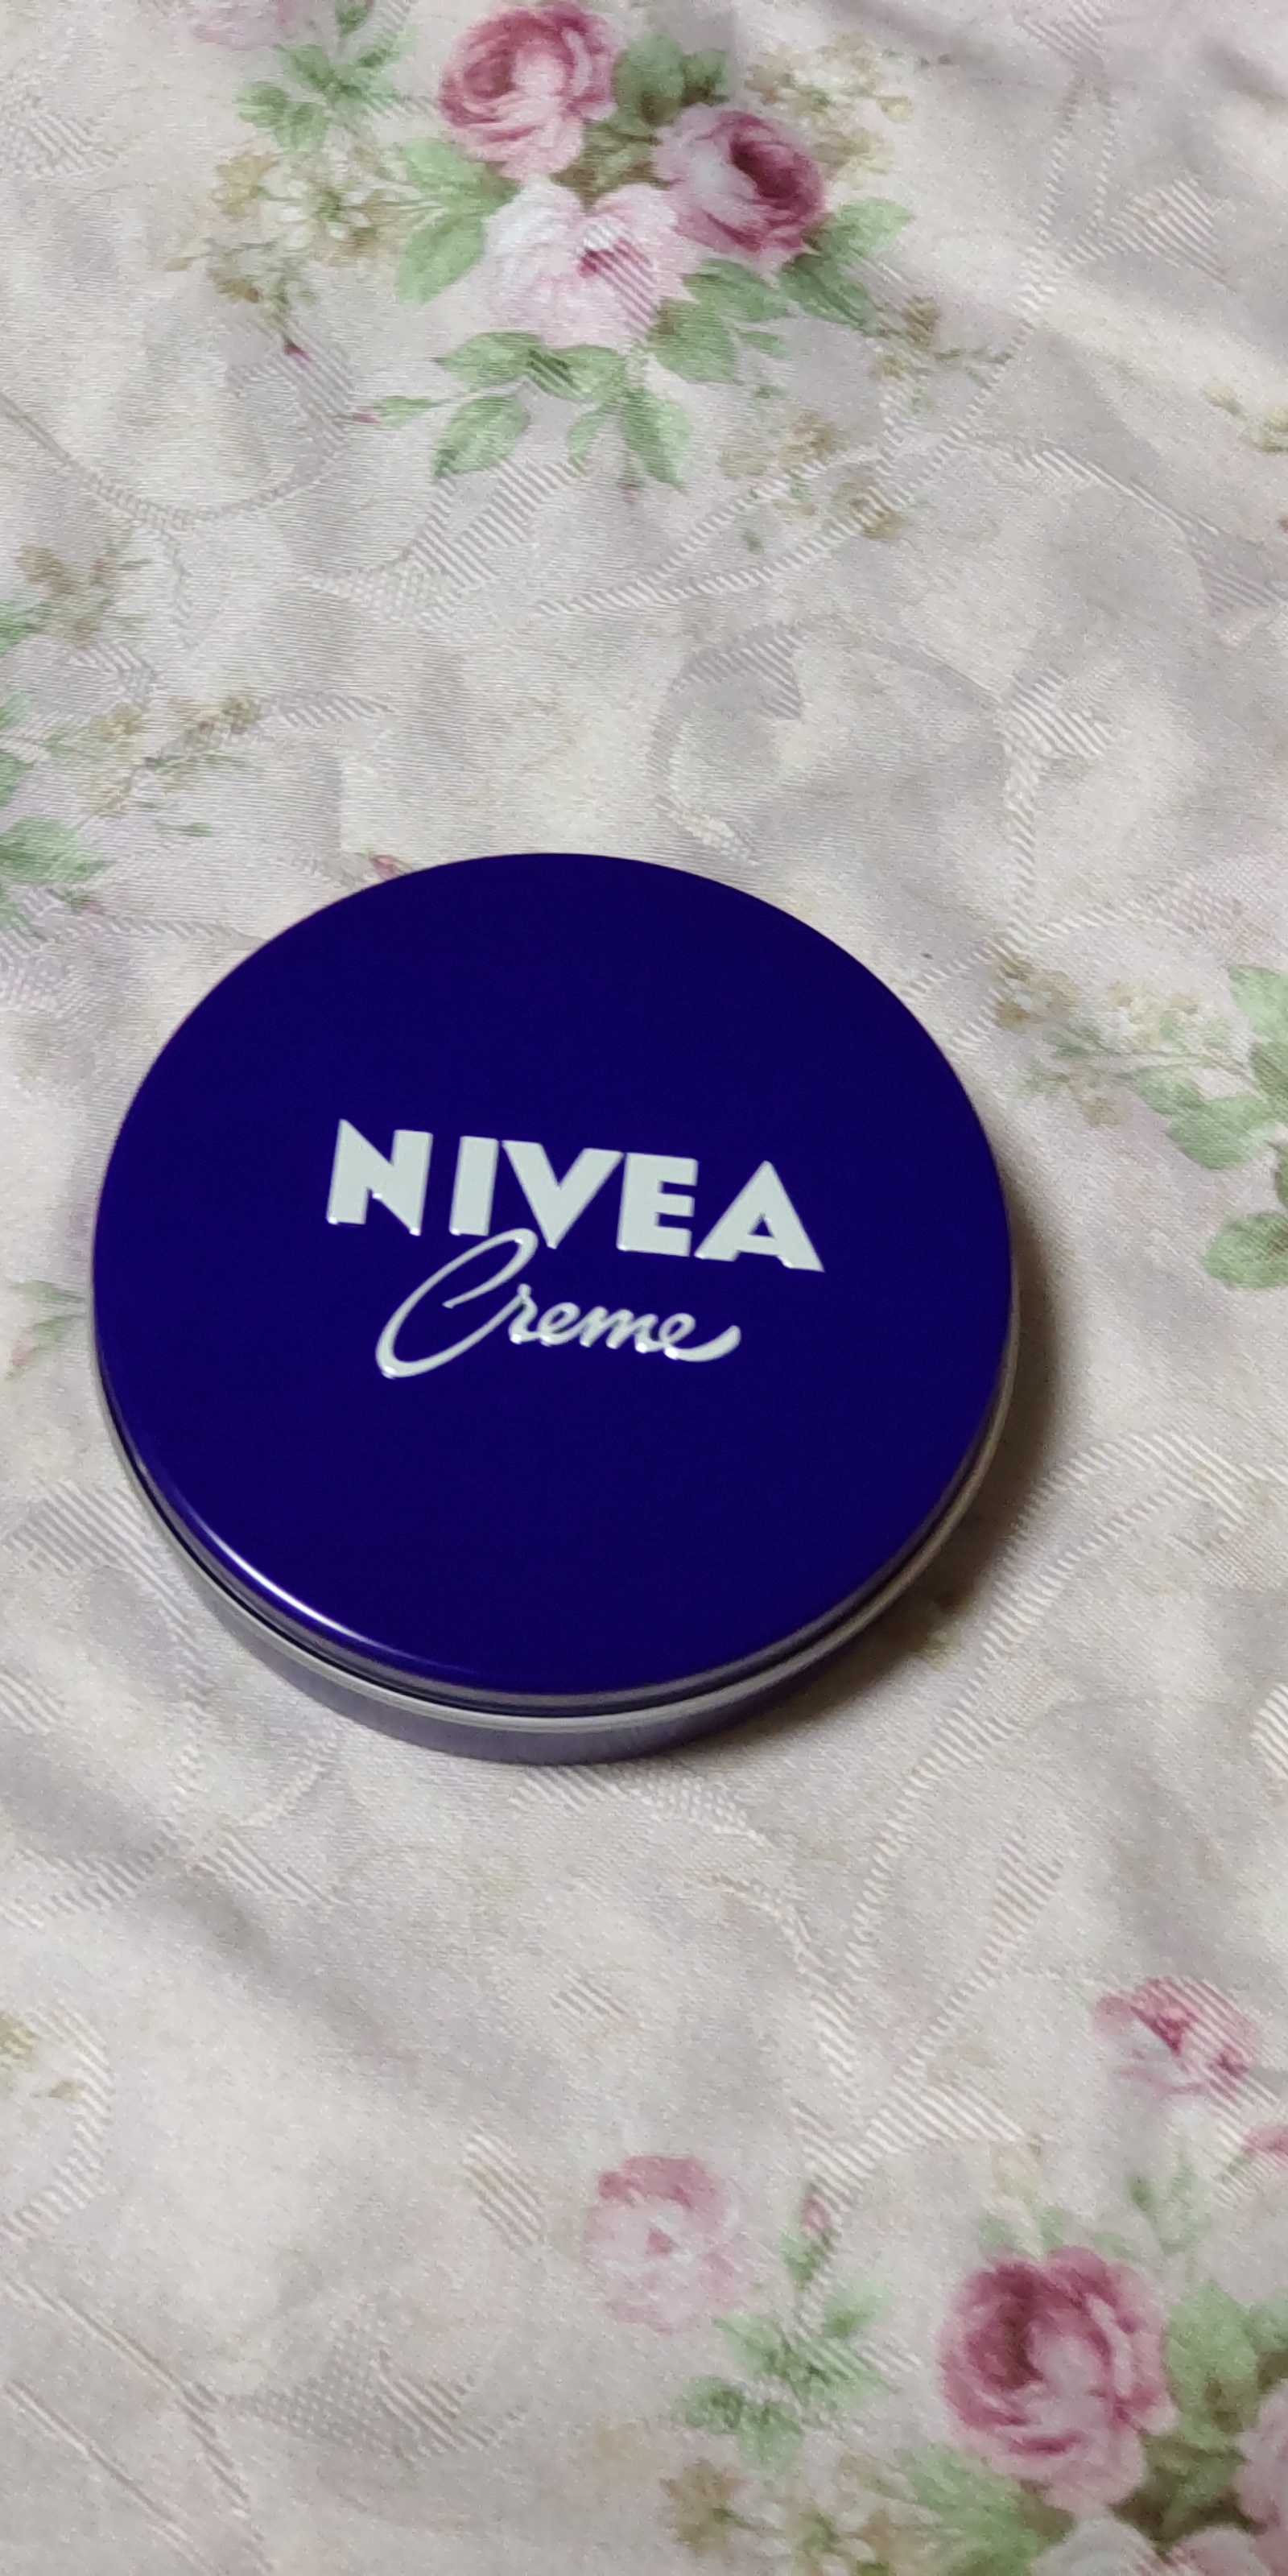 NIVEA(ニベア) クリーム(大缶)を使った白黒小豆さんのクチコミ画像1